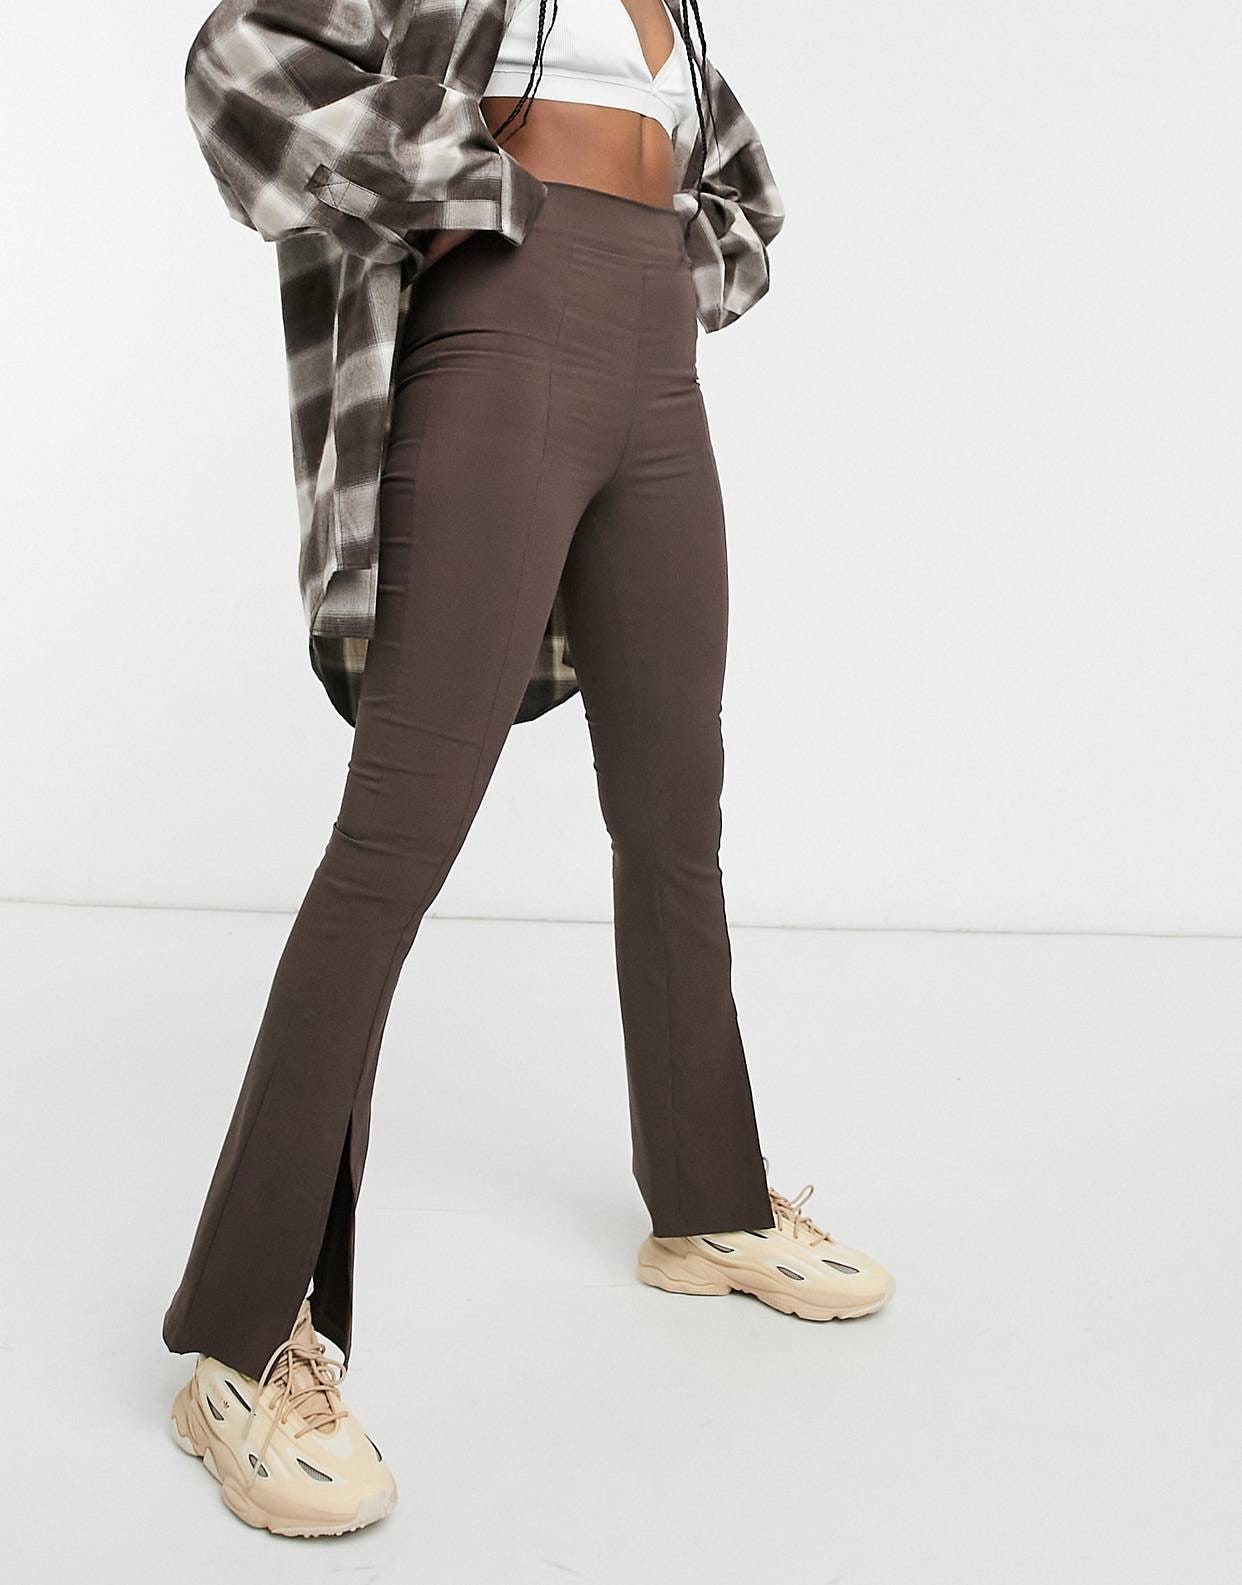 Это тренд брюки с разрезами — самый изящный способ превратить простой образ в модный